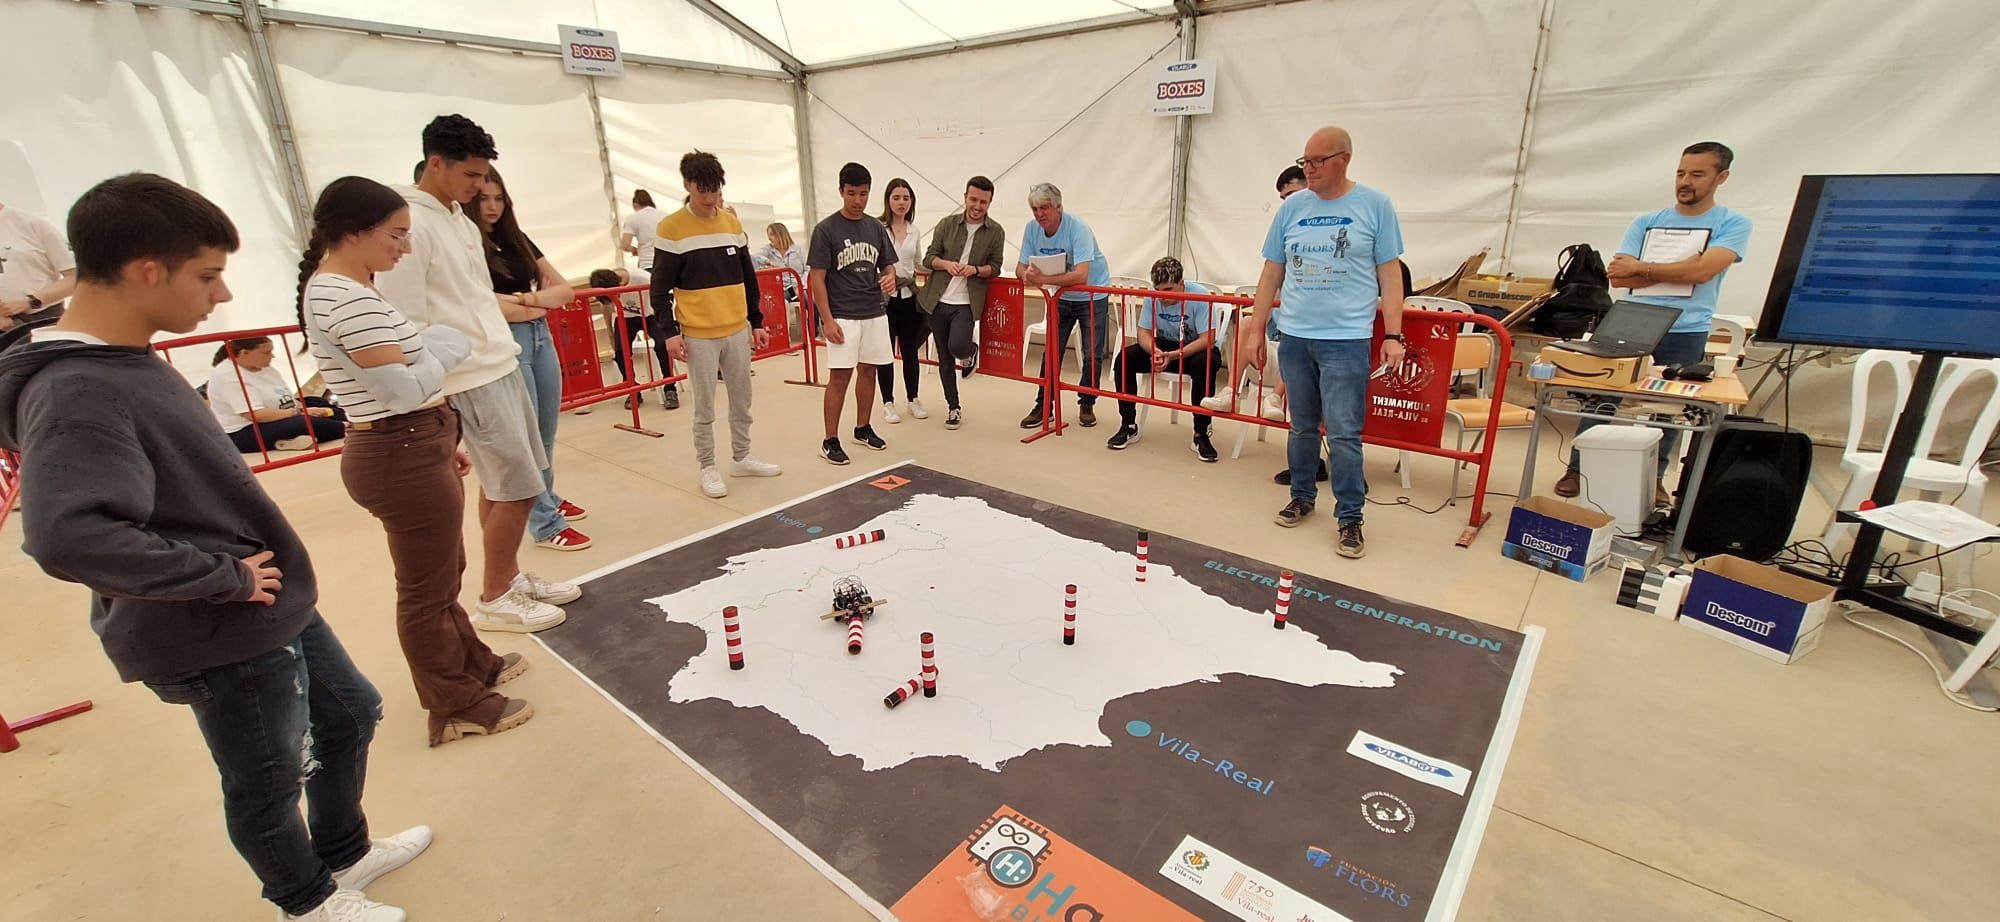 Las imágenes del exitoro concurso de robótica Vilabot de Vila-real